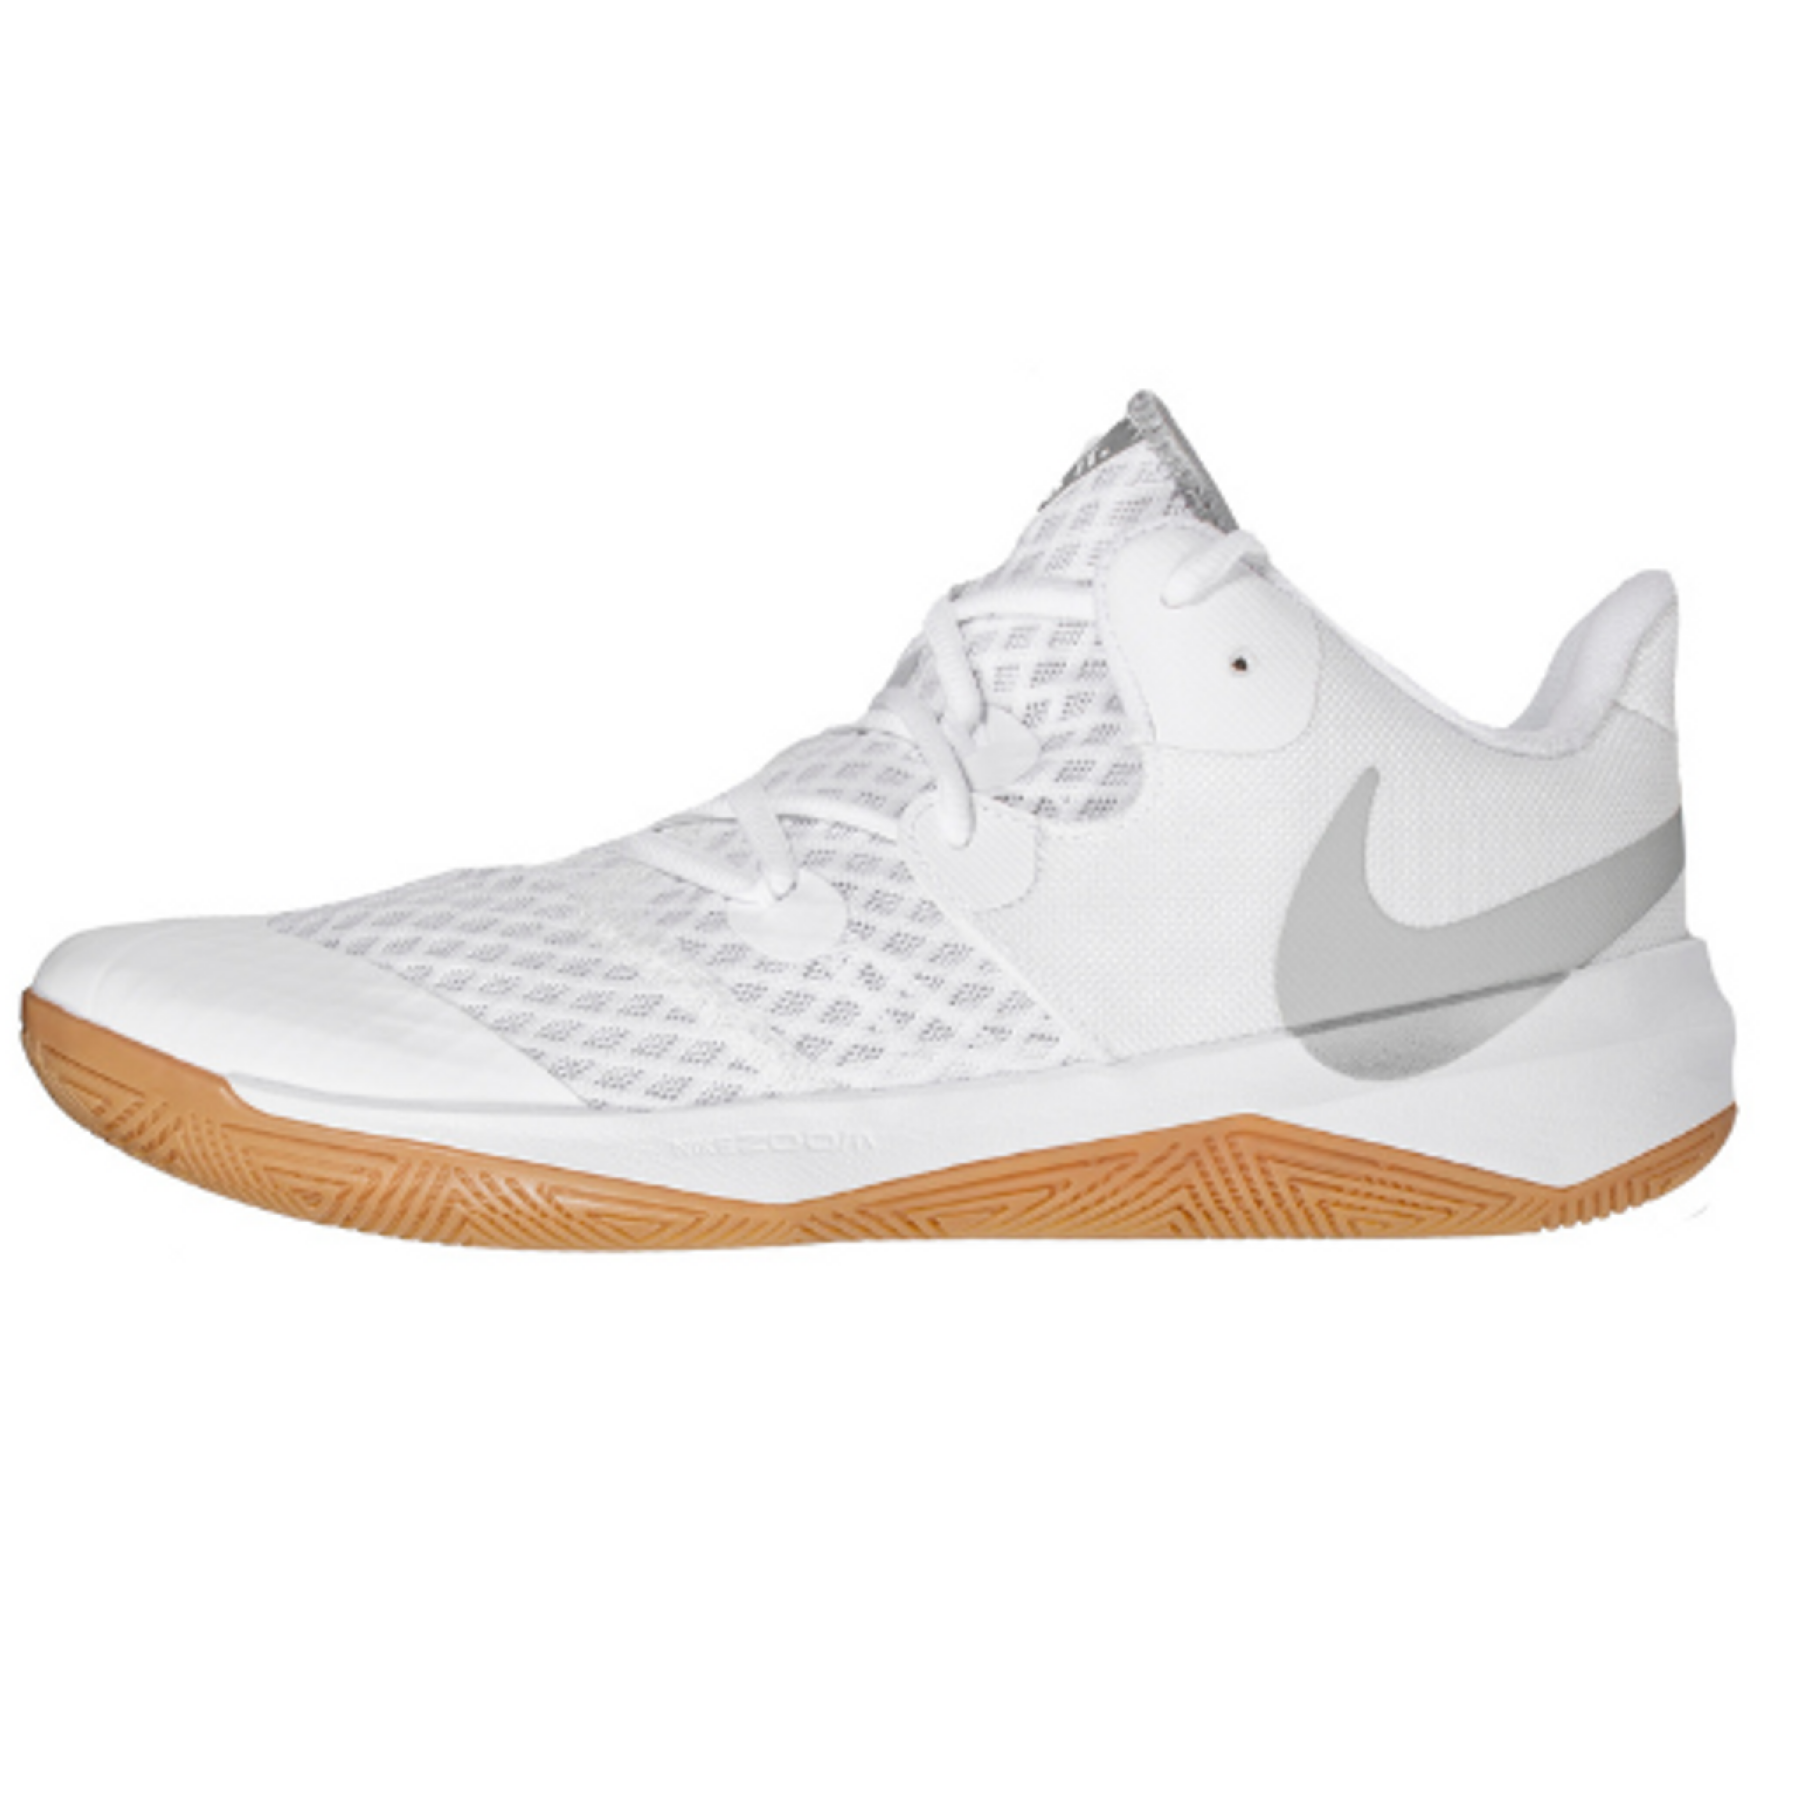 Schoenen Indoor Nike Zoom Hyperspeed Court SE